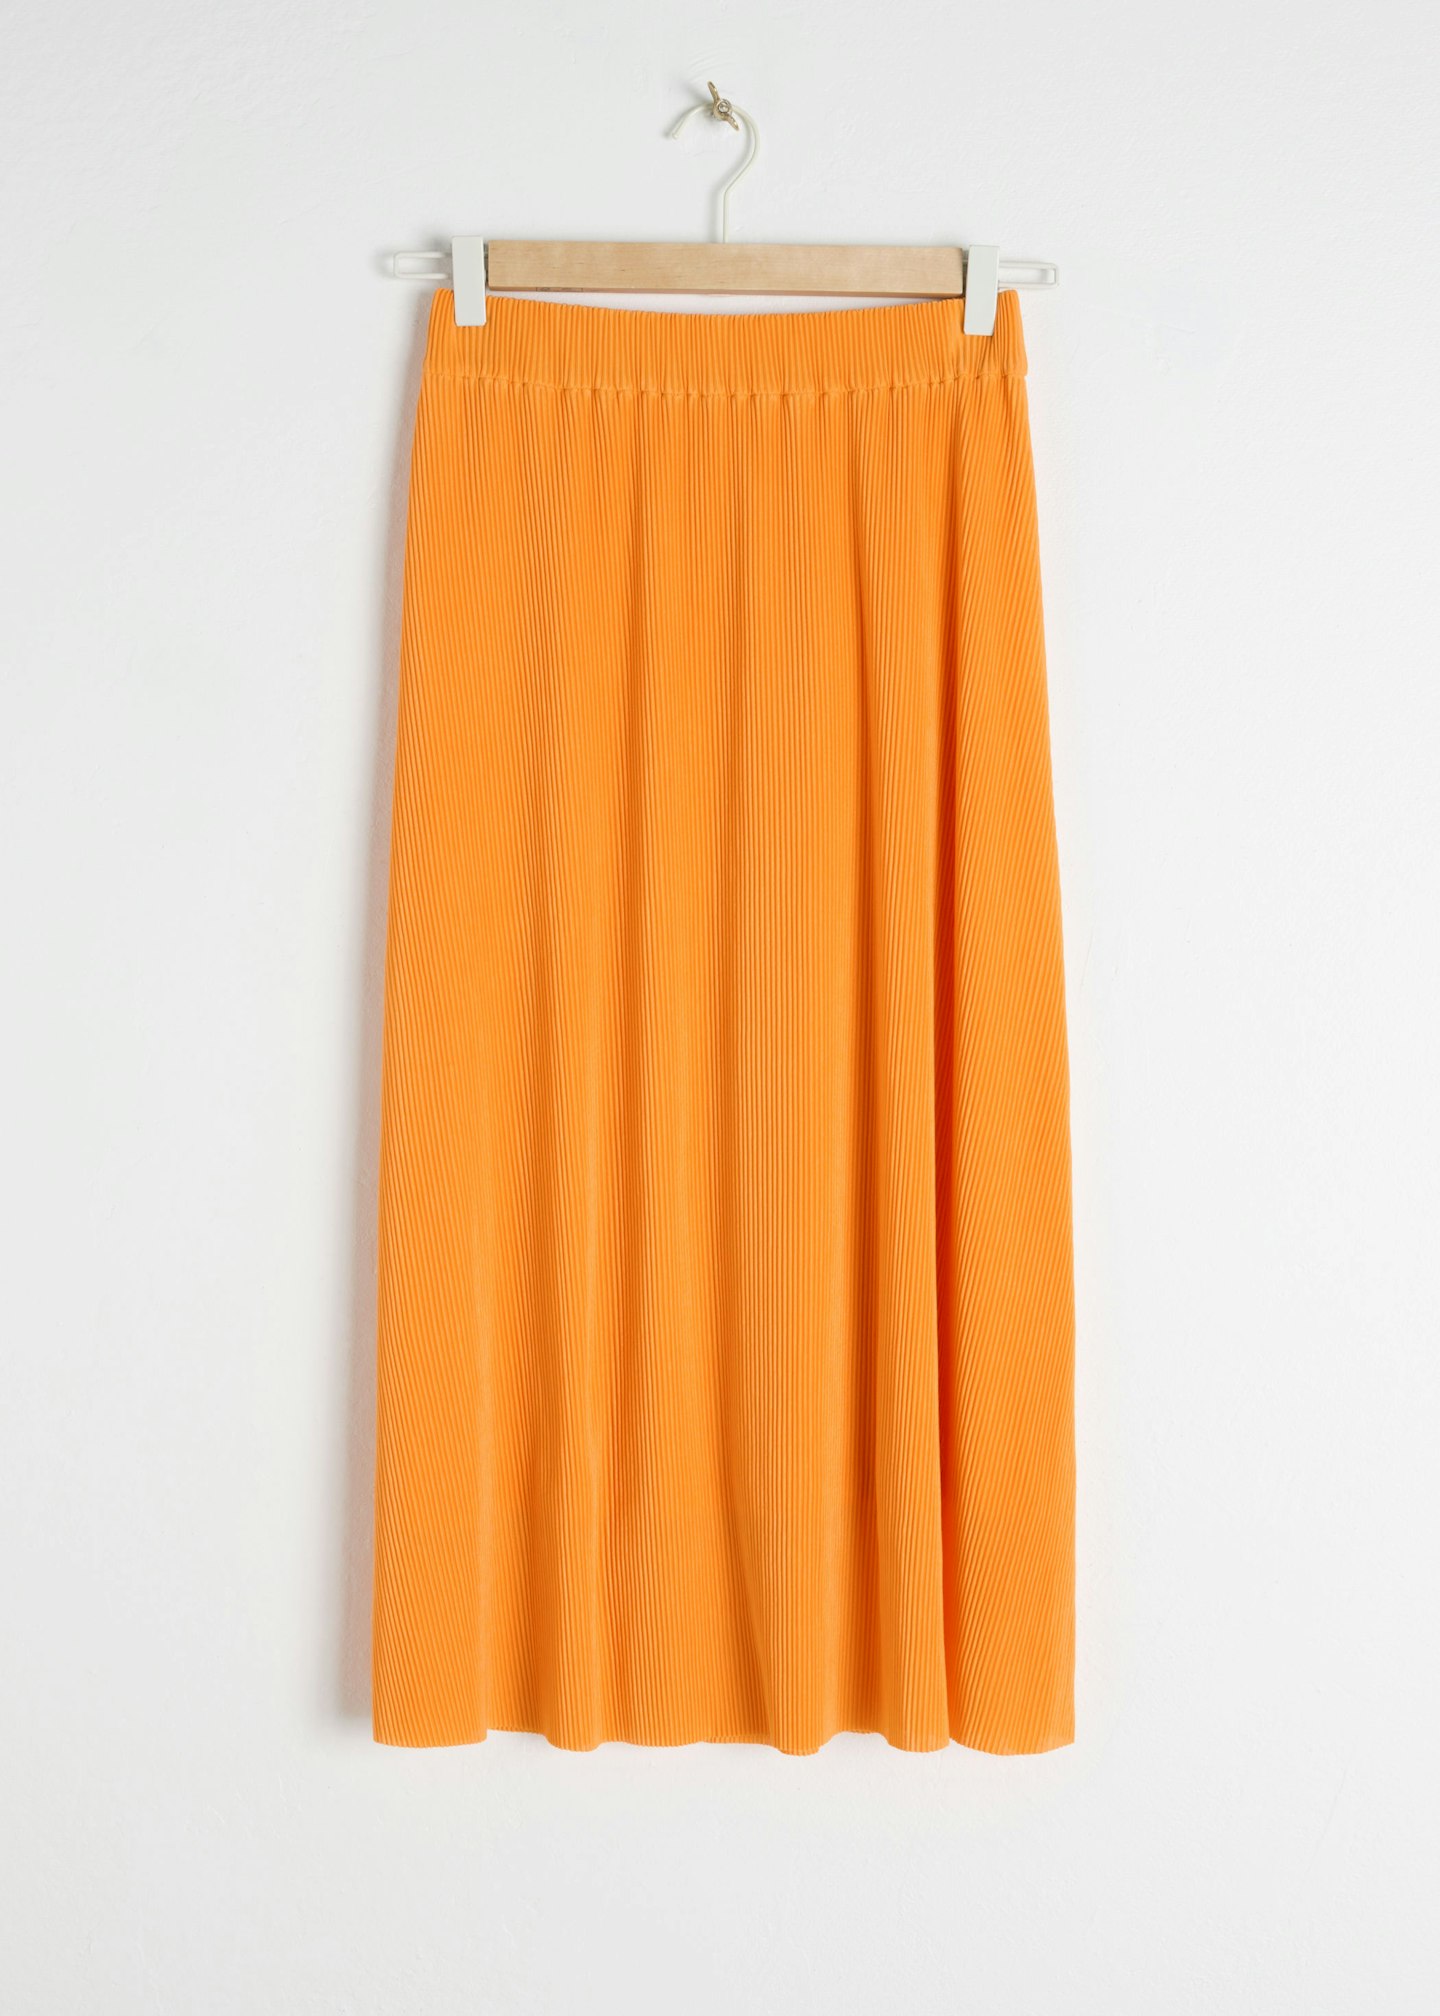 & Other Stories, Plisse Pleated Midi Skirt, £49